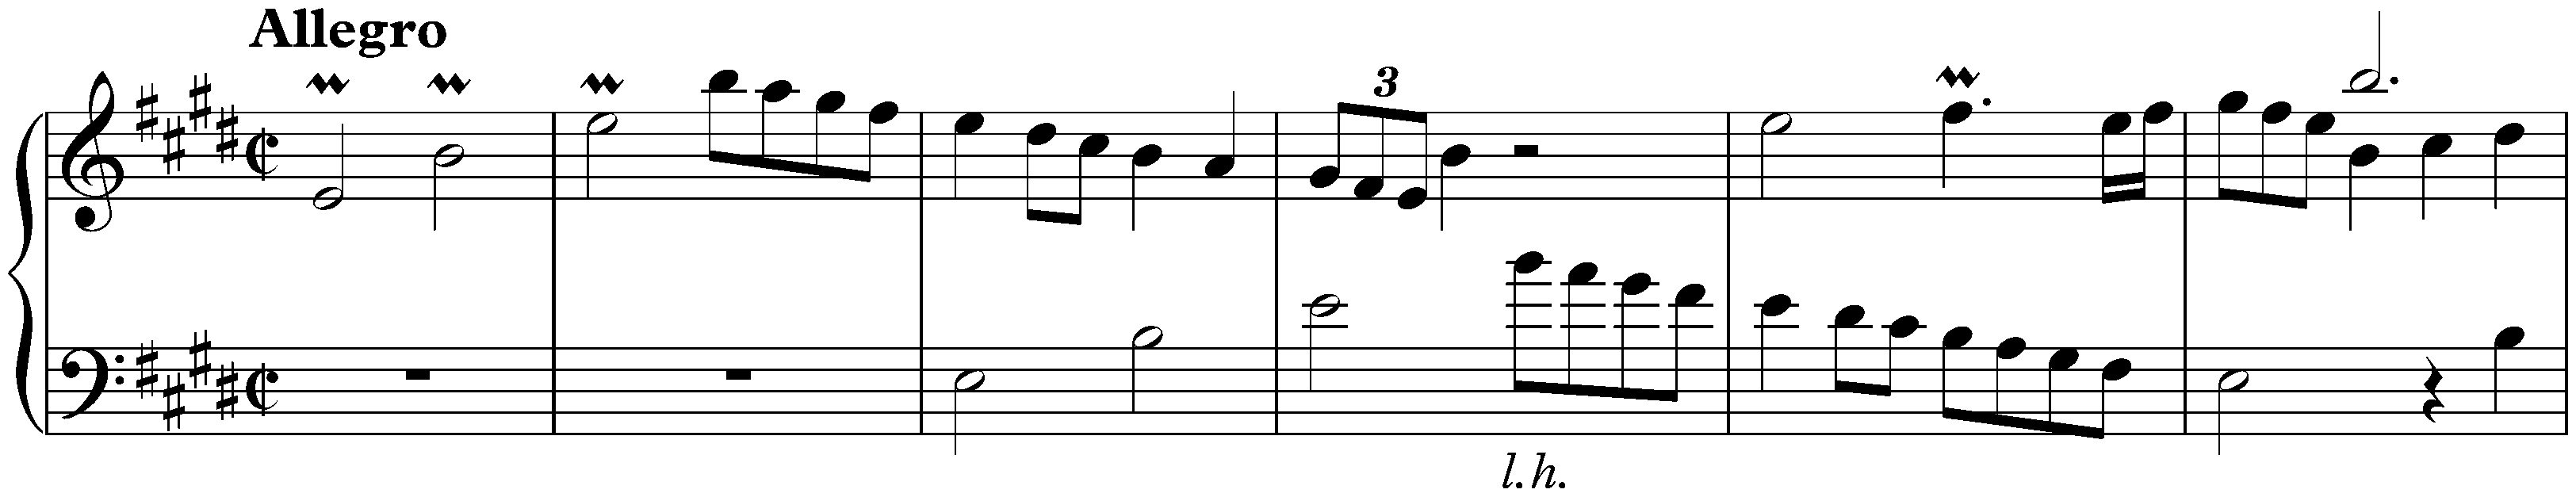 Sonata in E major, K. 495